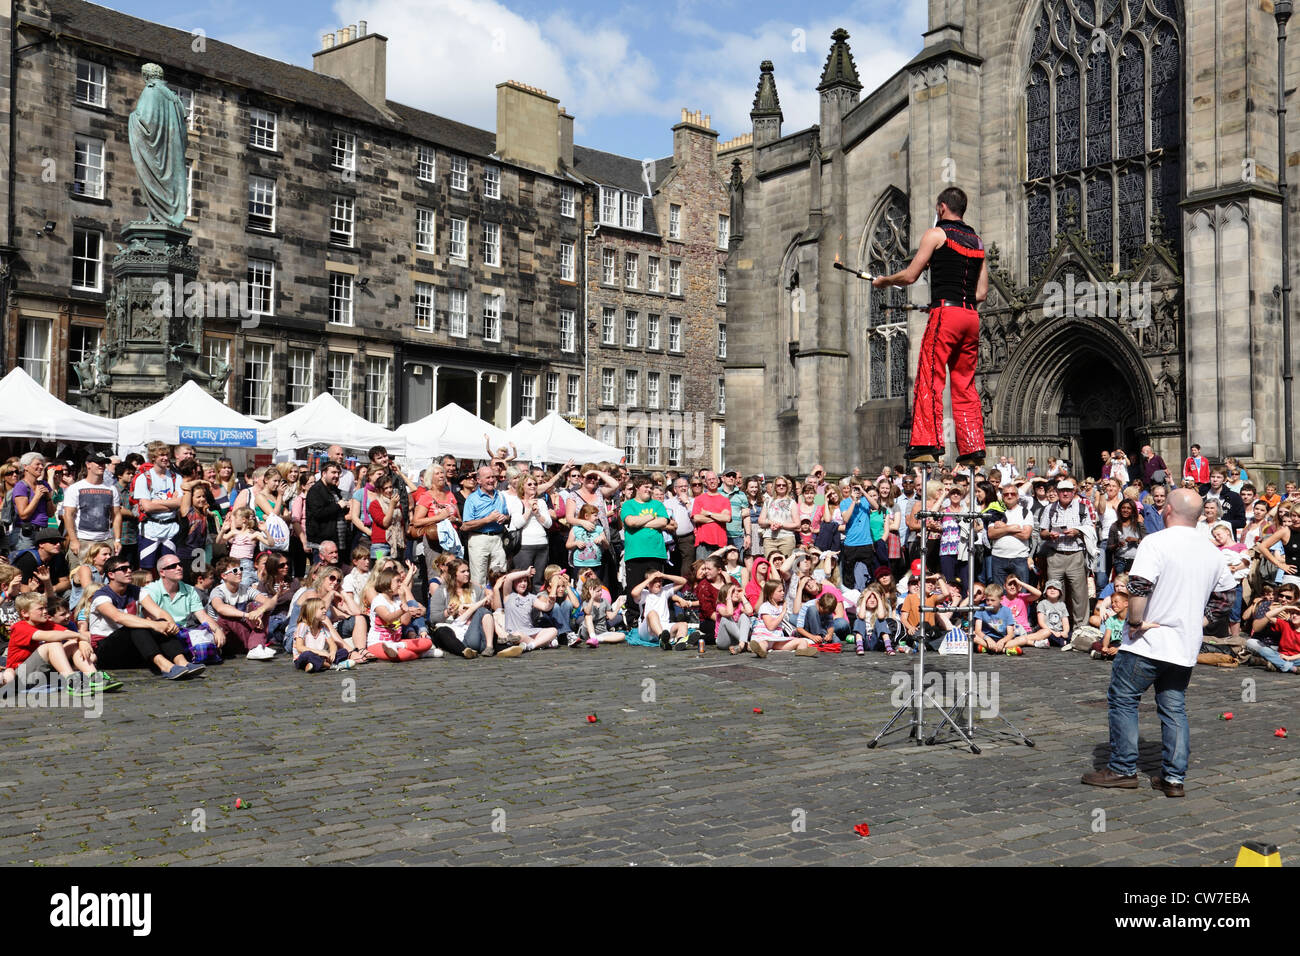 Espectadores viendo una actuación callejera en el Festival Fringe de Edimburgo, West Parliament Square, Escocia, Reino Unido Foto de stock